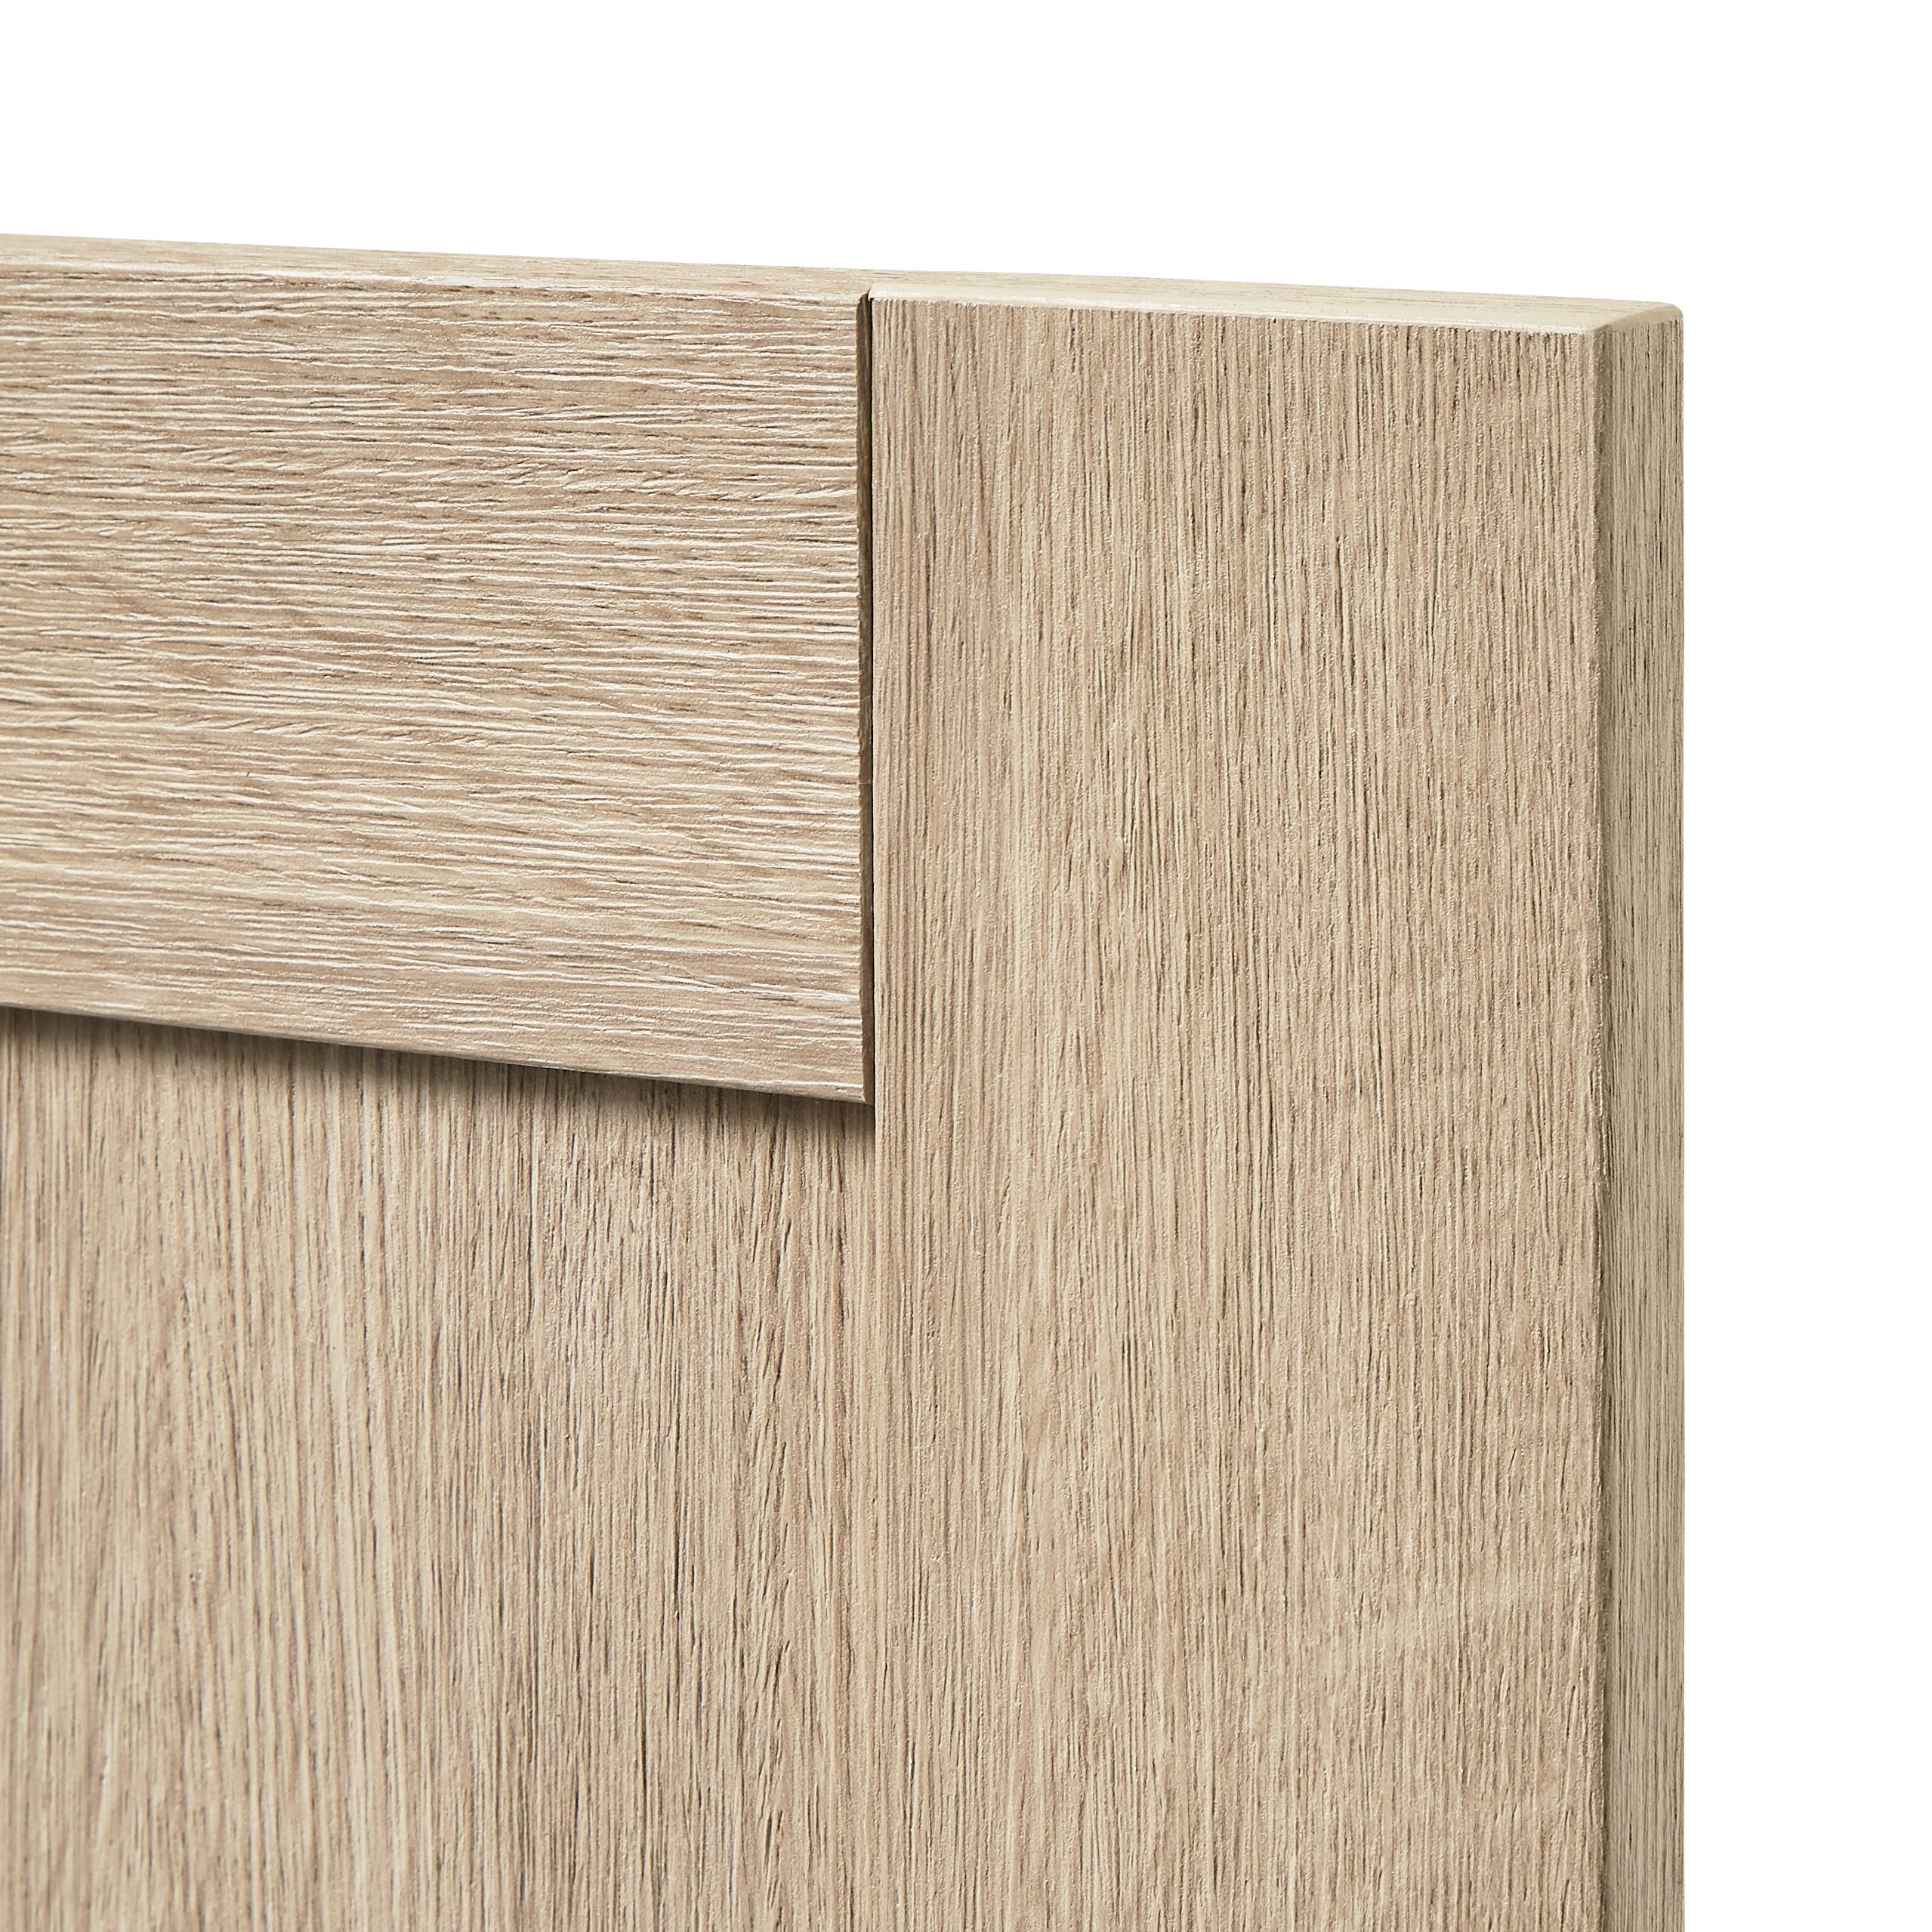 GoodHome Alpinia Oak effect shaker Tall appliance Cabinet door (W)600mm (H)806mm (T)18mm